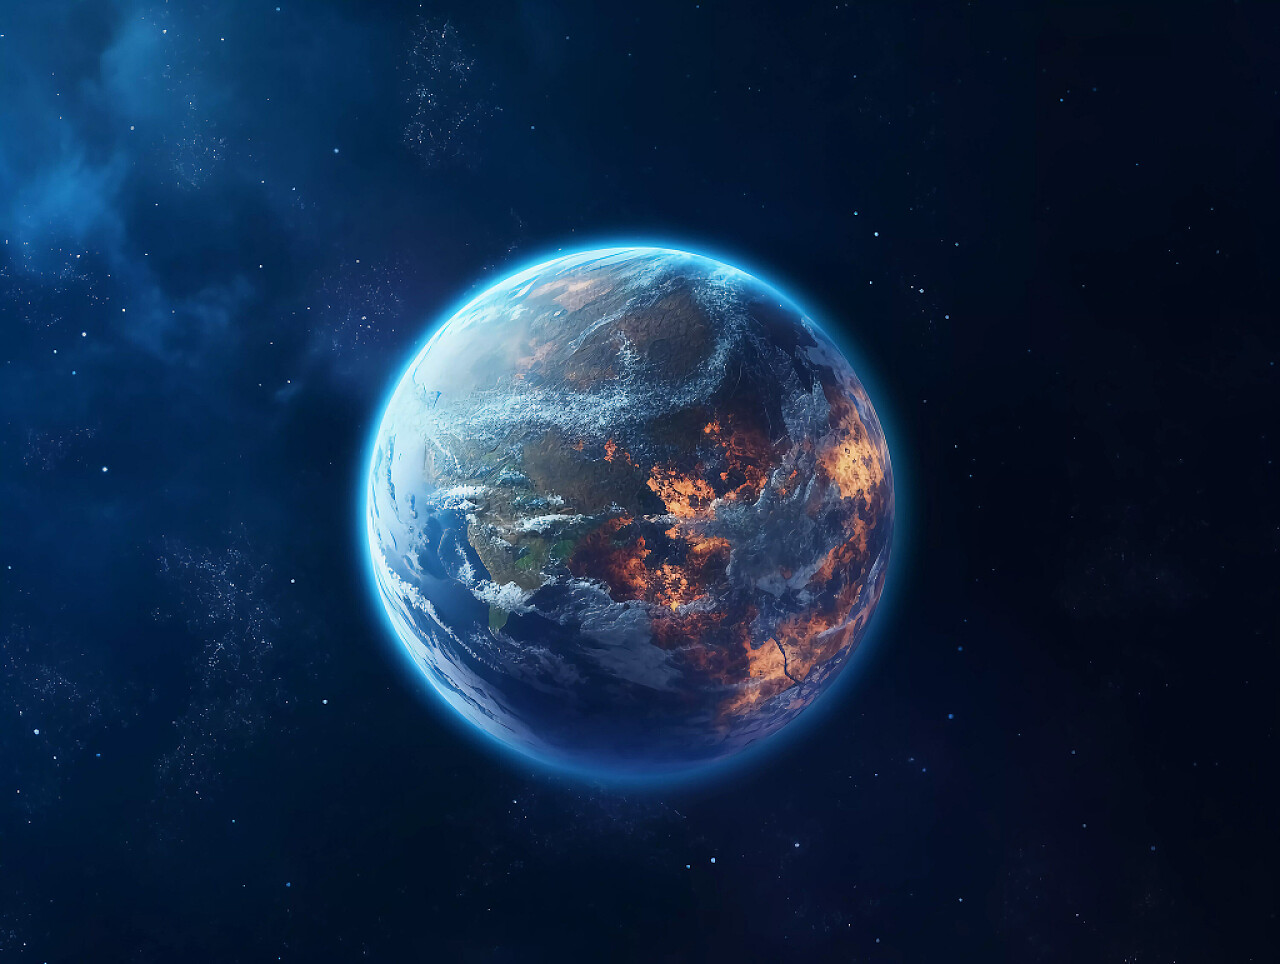 科技AI探索星空地球的场景图